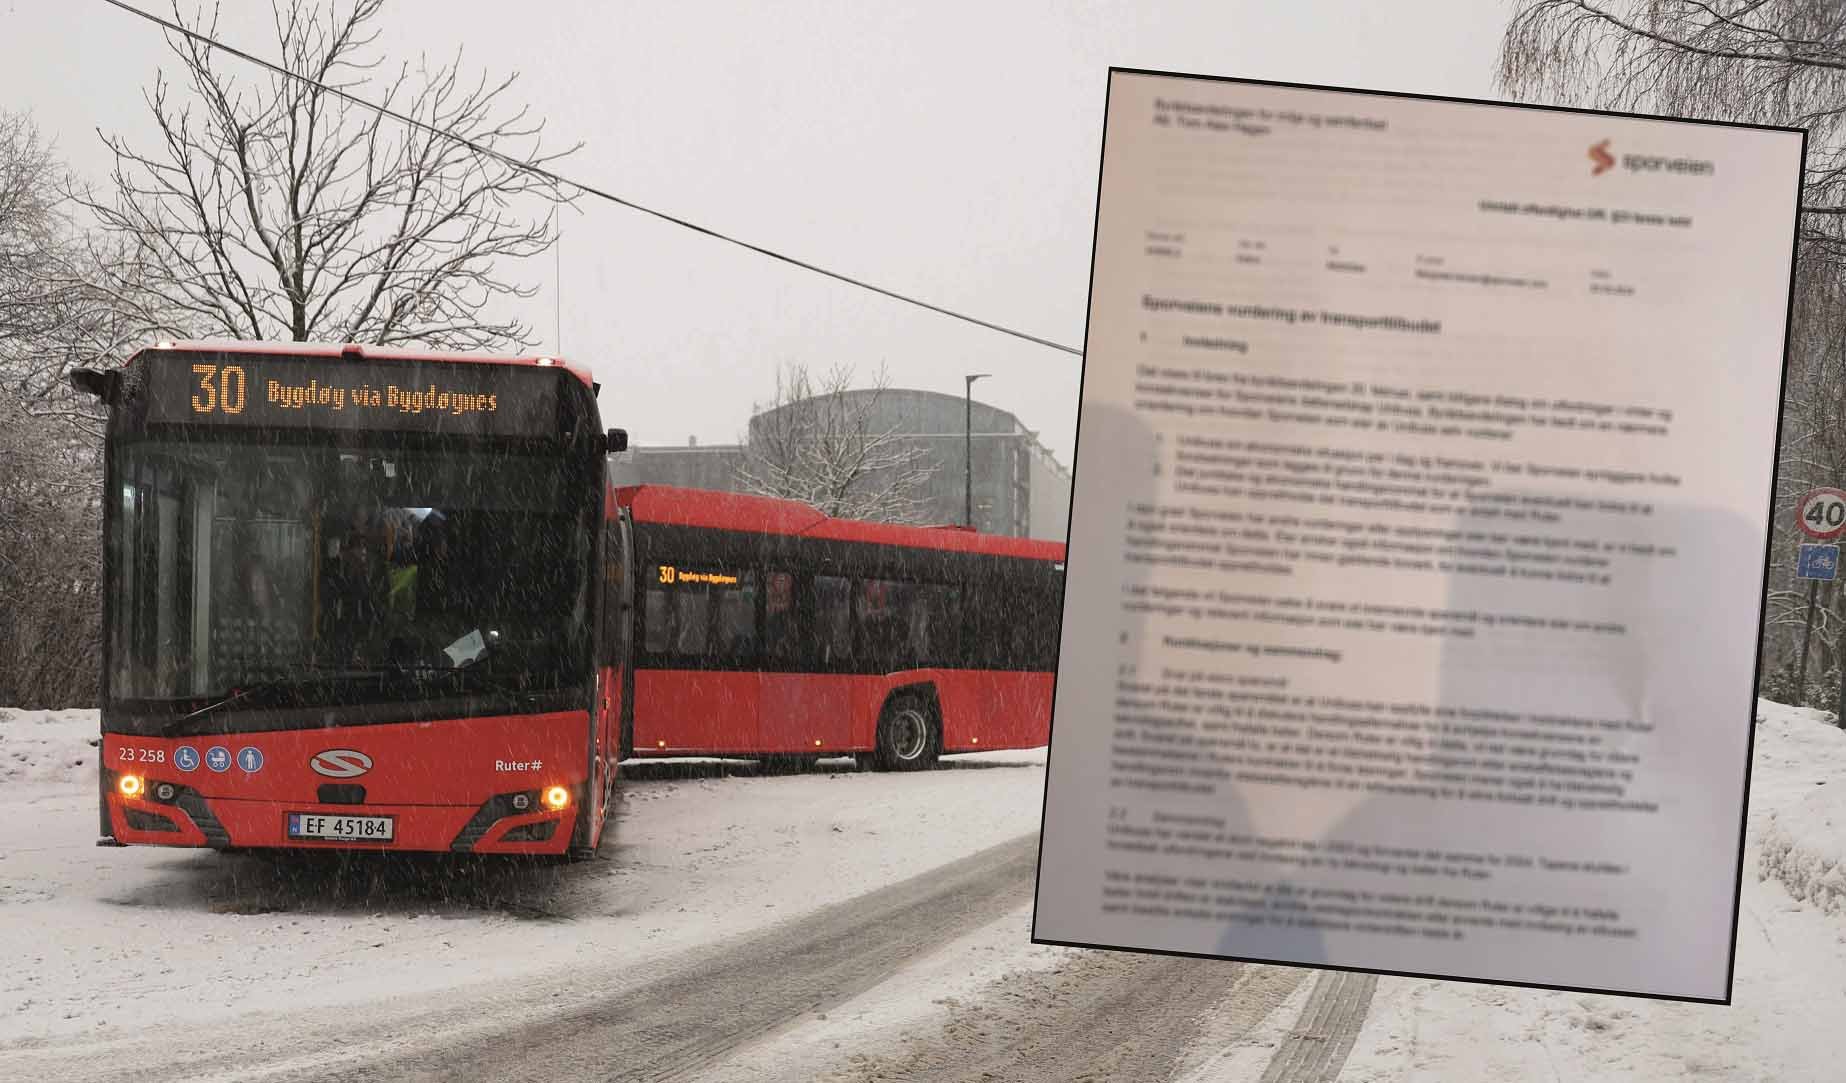 konkurs för bussbolag kan drabba Norge